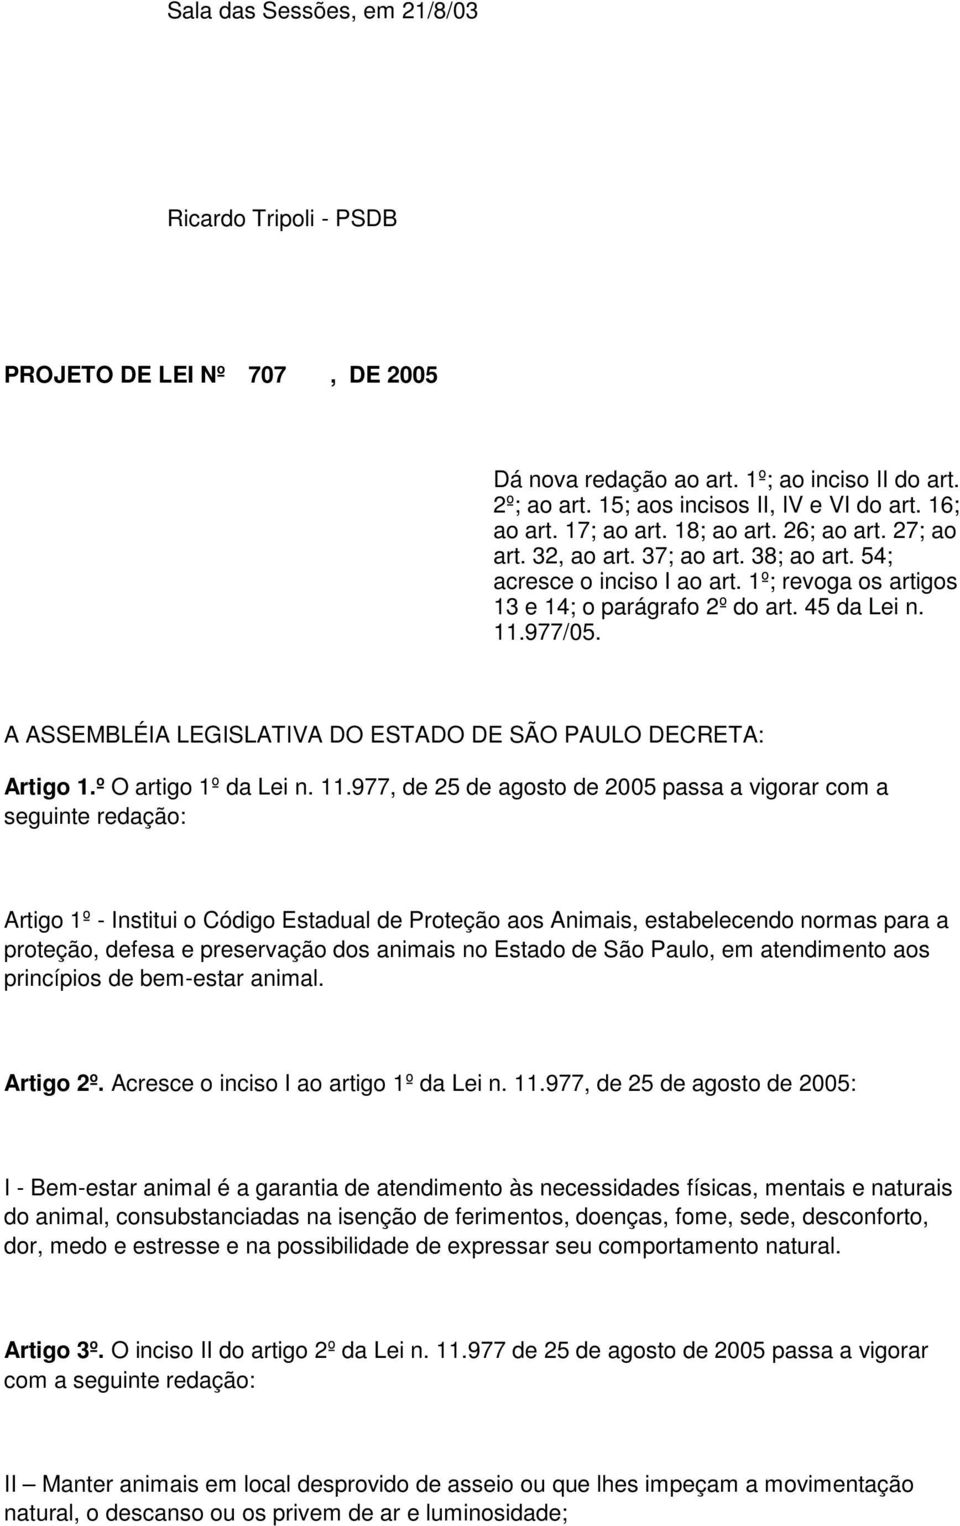 A ASSEMBLÉIA LEGISLATIVA DO ESTADO DE SÃO PAULO DECRETA: Artigo 1.º O artigo 1º da Lei n. 11.